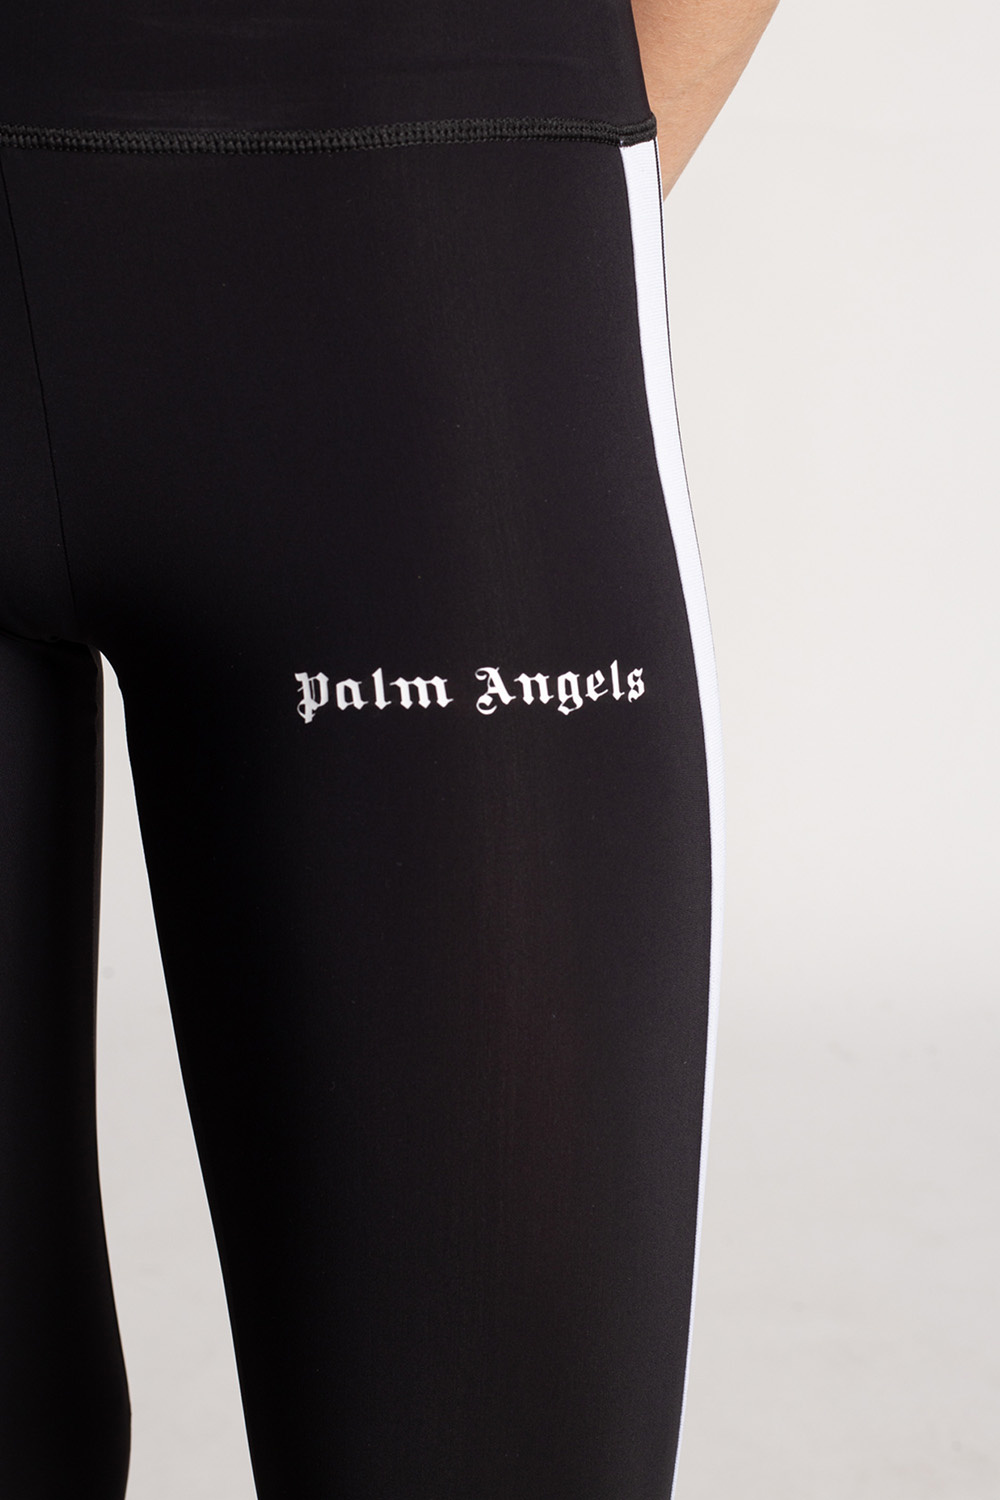 PALM ANGELS, Logo Leggings, Women, Leggings